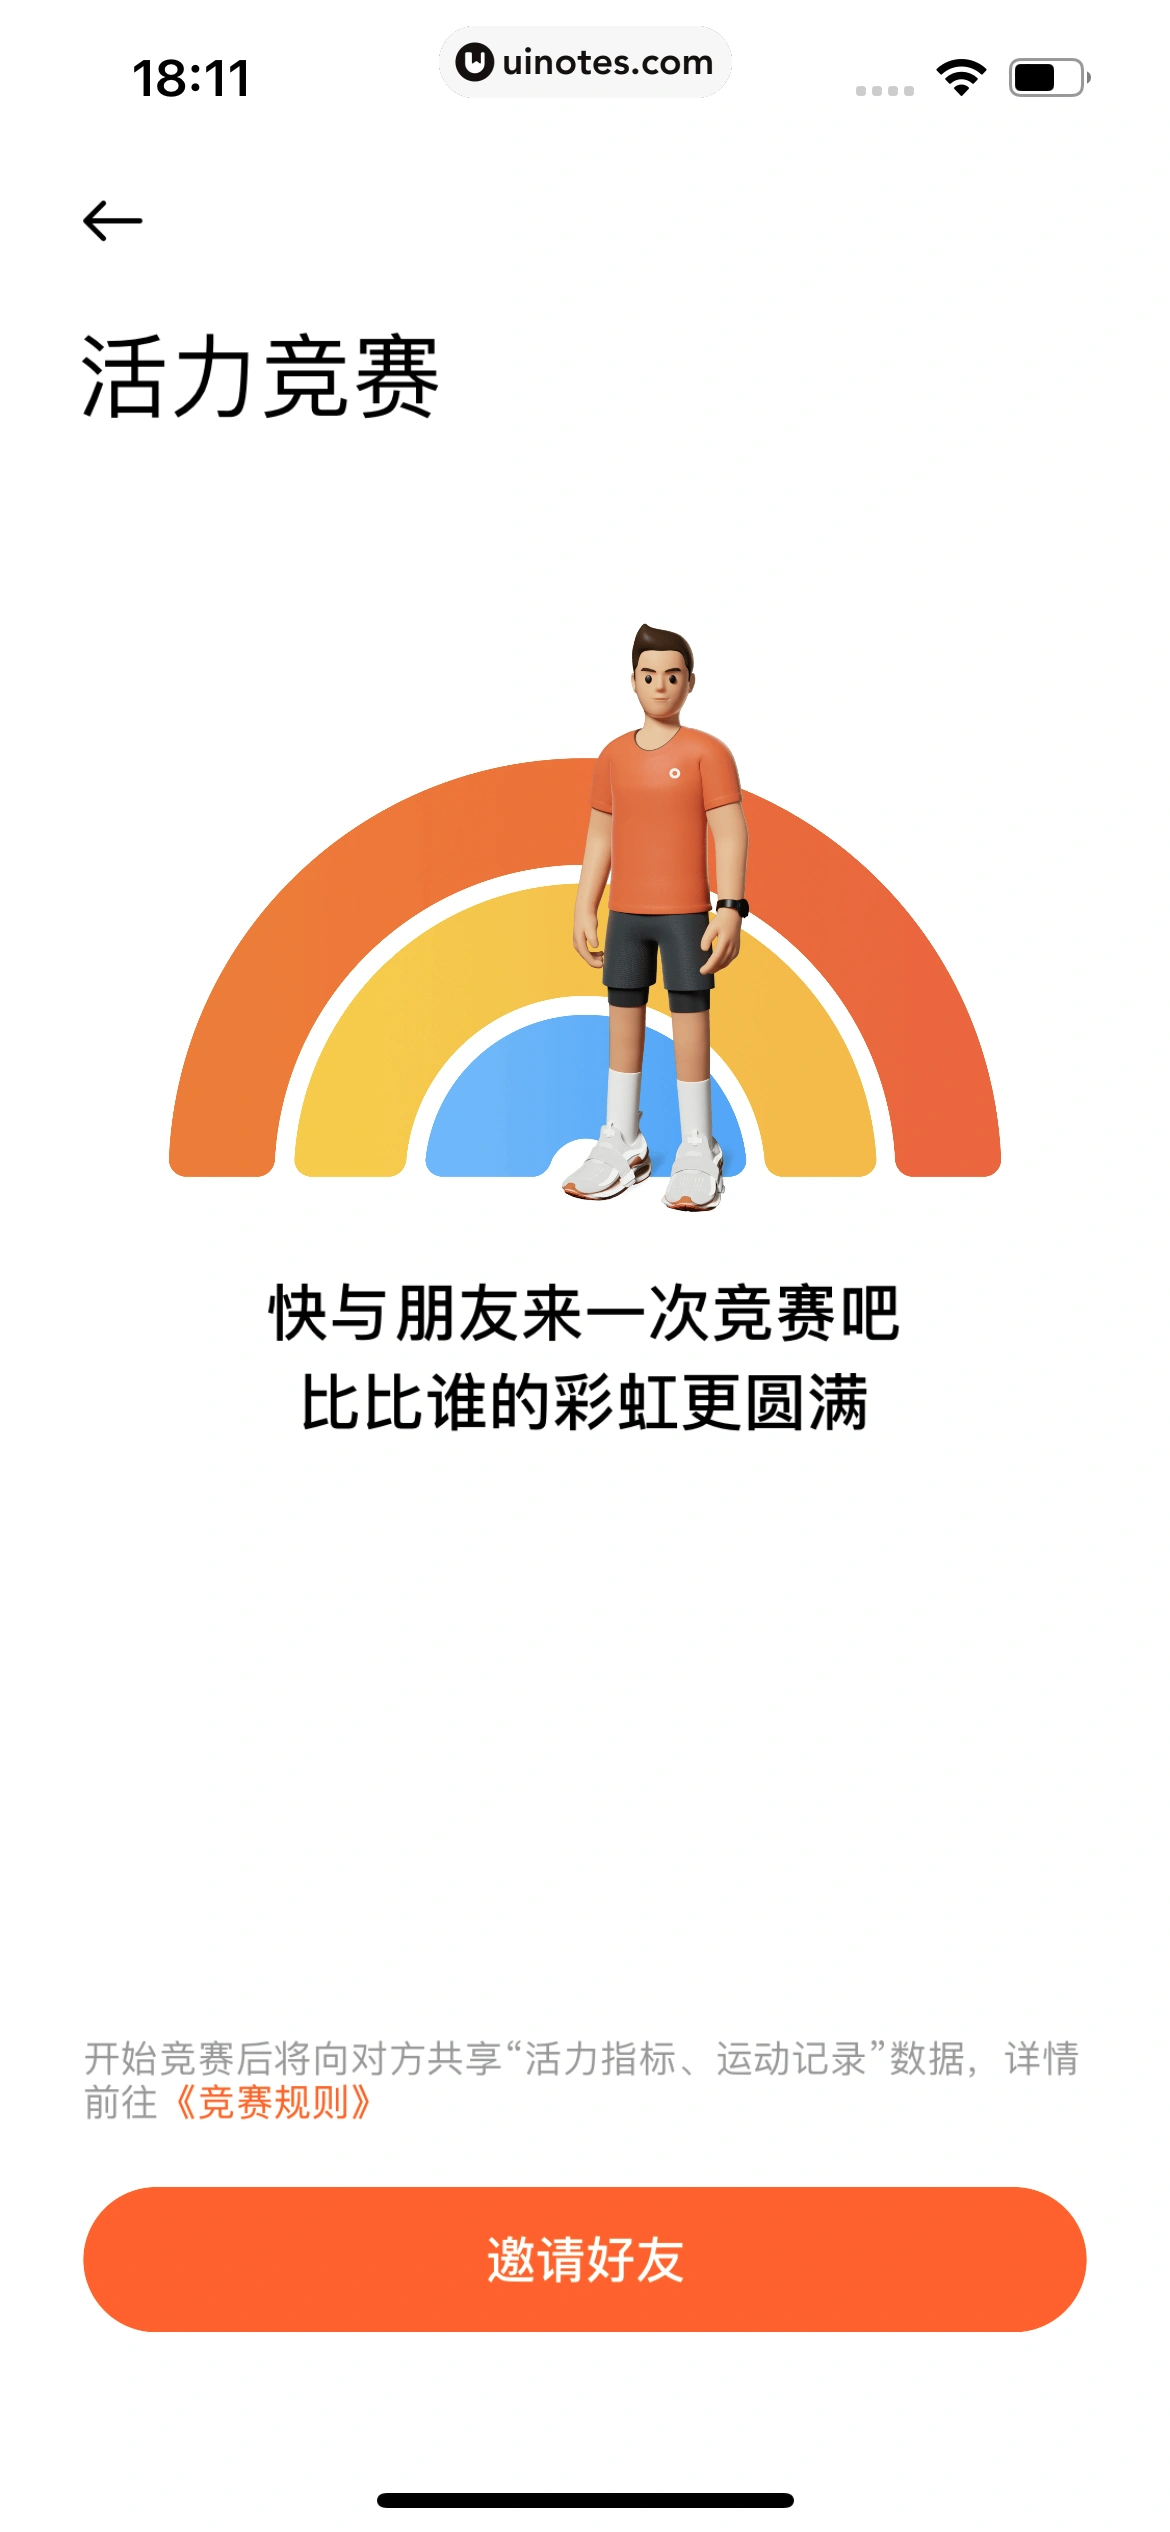 小米运动健康 App 截图 007 - UI Notes